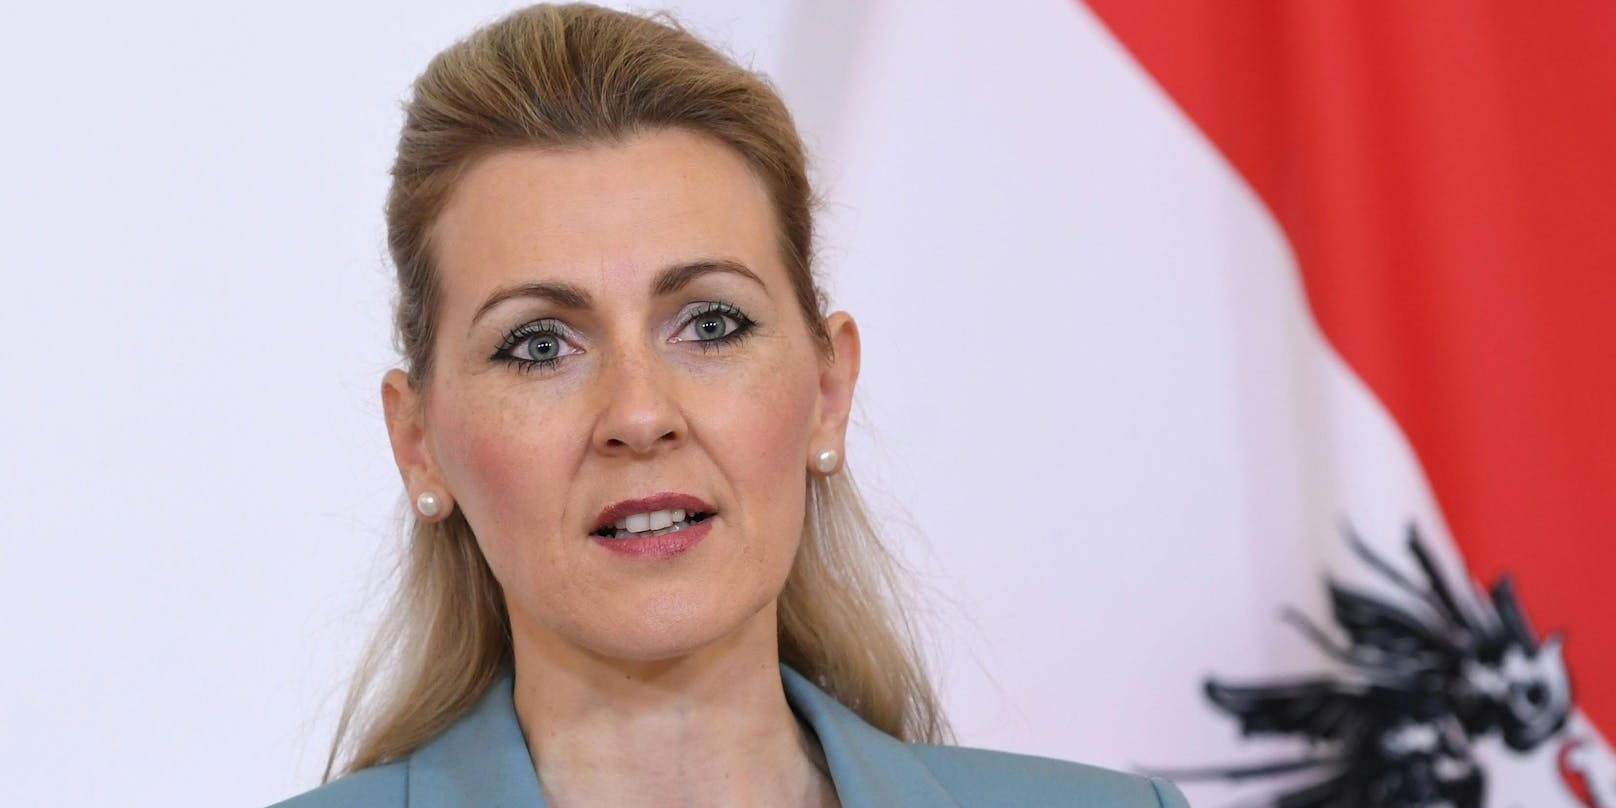 ÖVP-Arbeitsministerin Christine Aschbacher steht unter heftigem Beschuss der Opposition